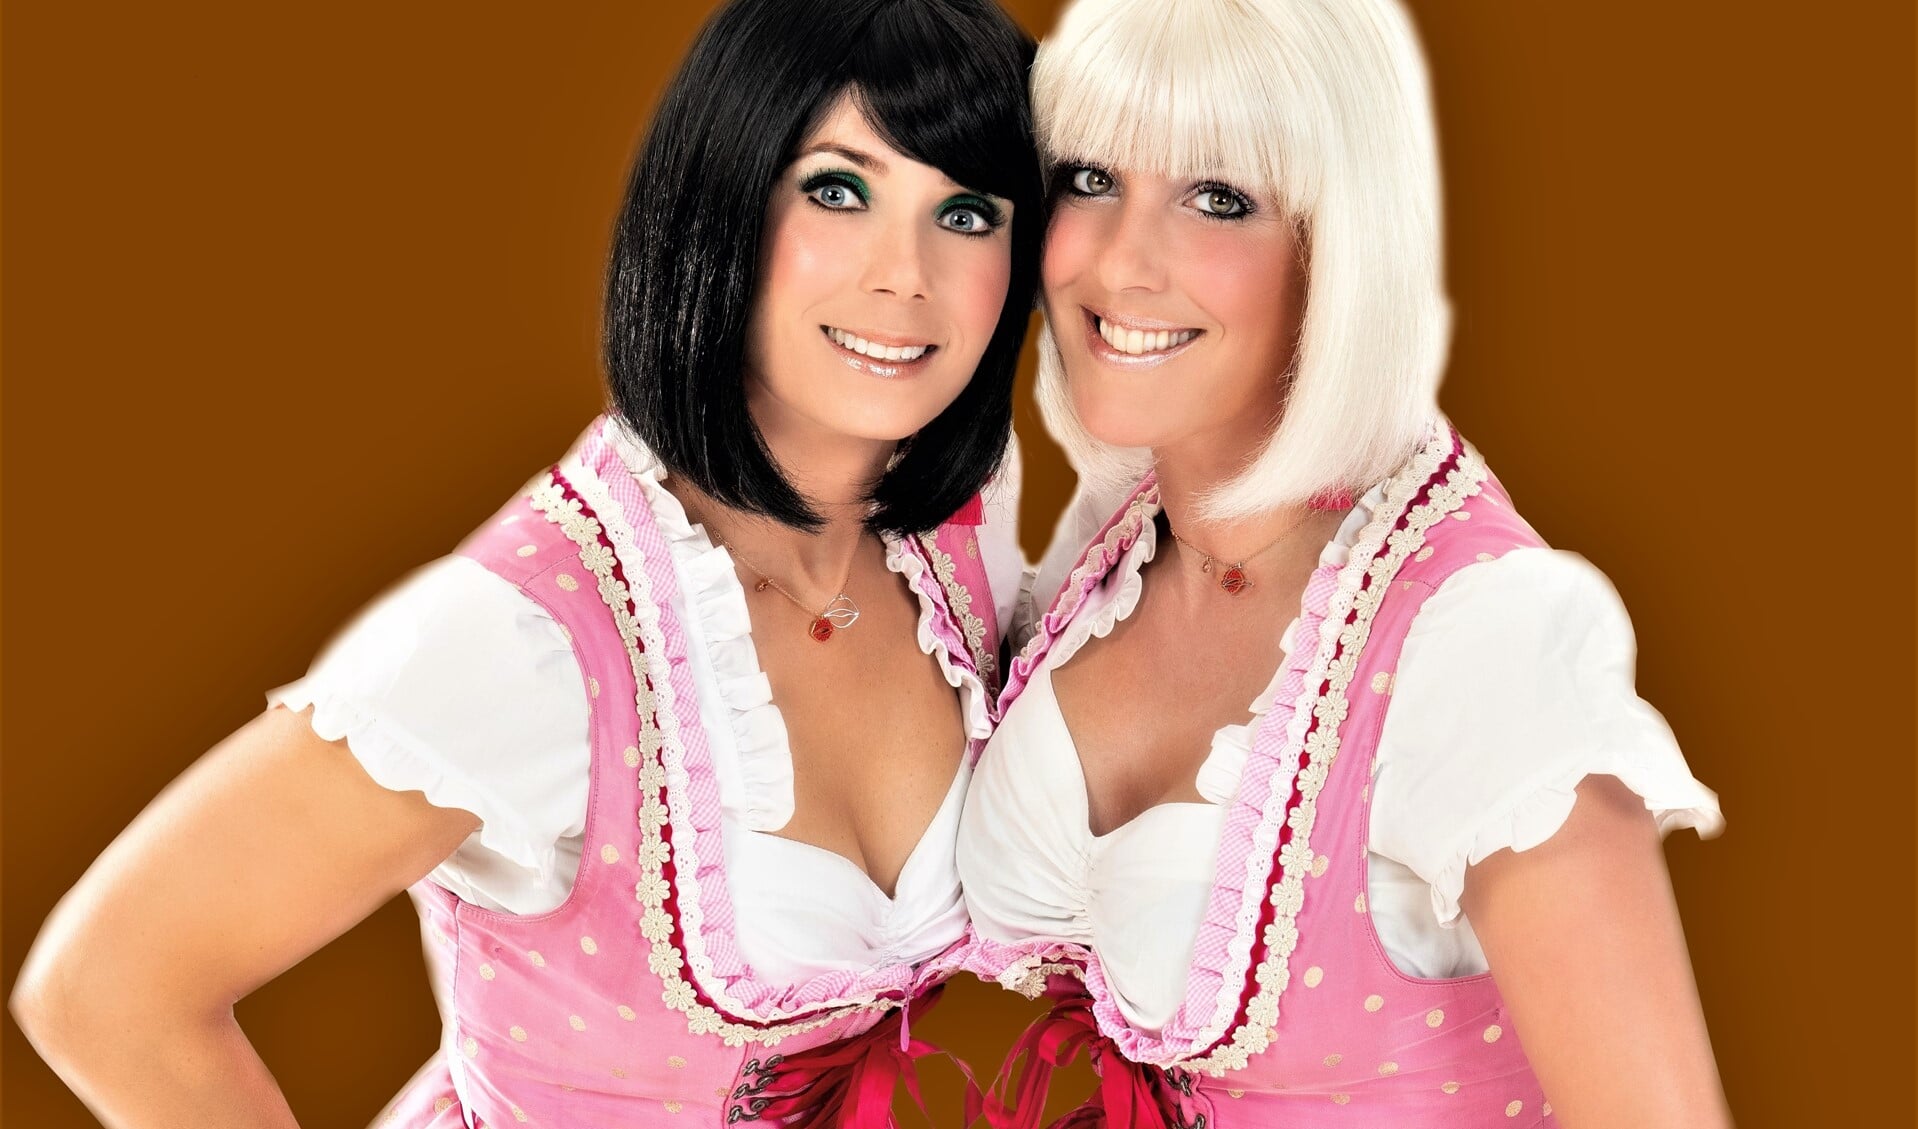 De Alpenzusjes Chantal van Geelen en Kirsten Stroek, bekend van allerlei schlagerfeesten, komen naar de Damzwabbers (foto: pr).